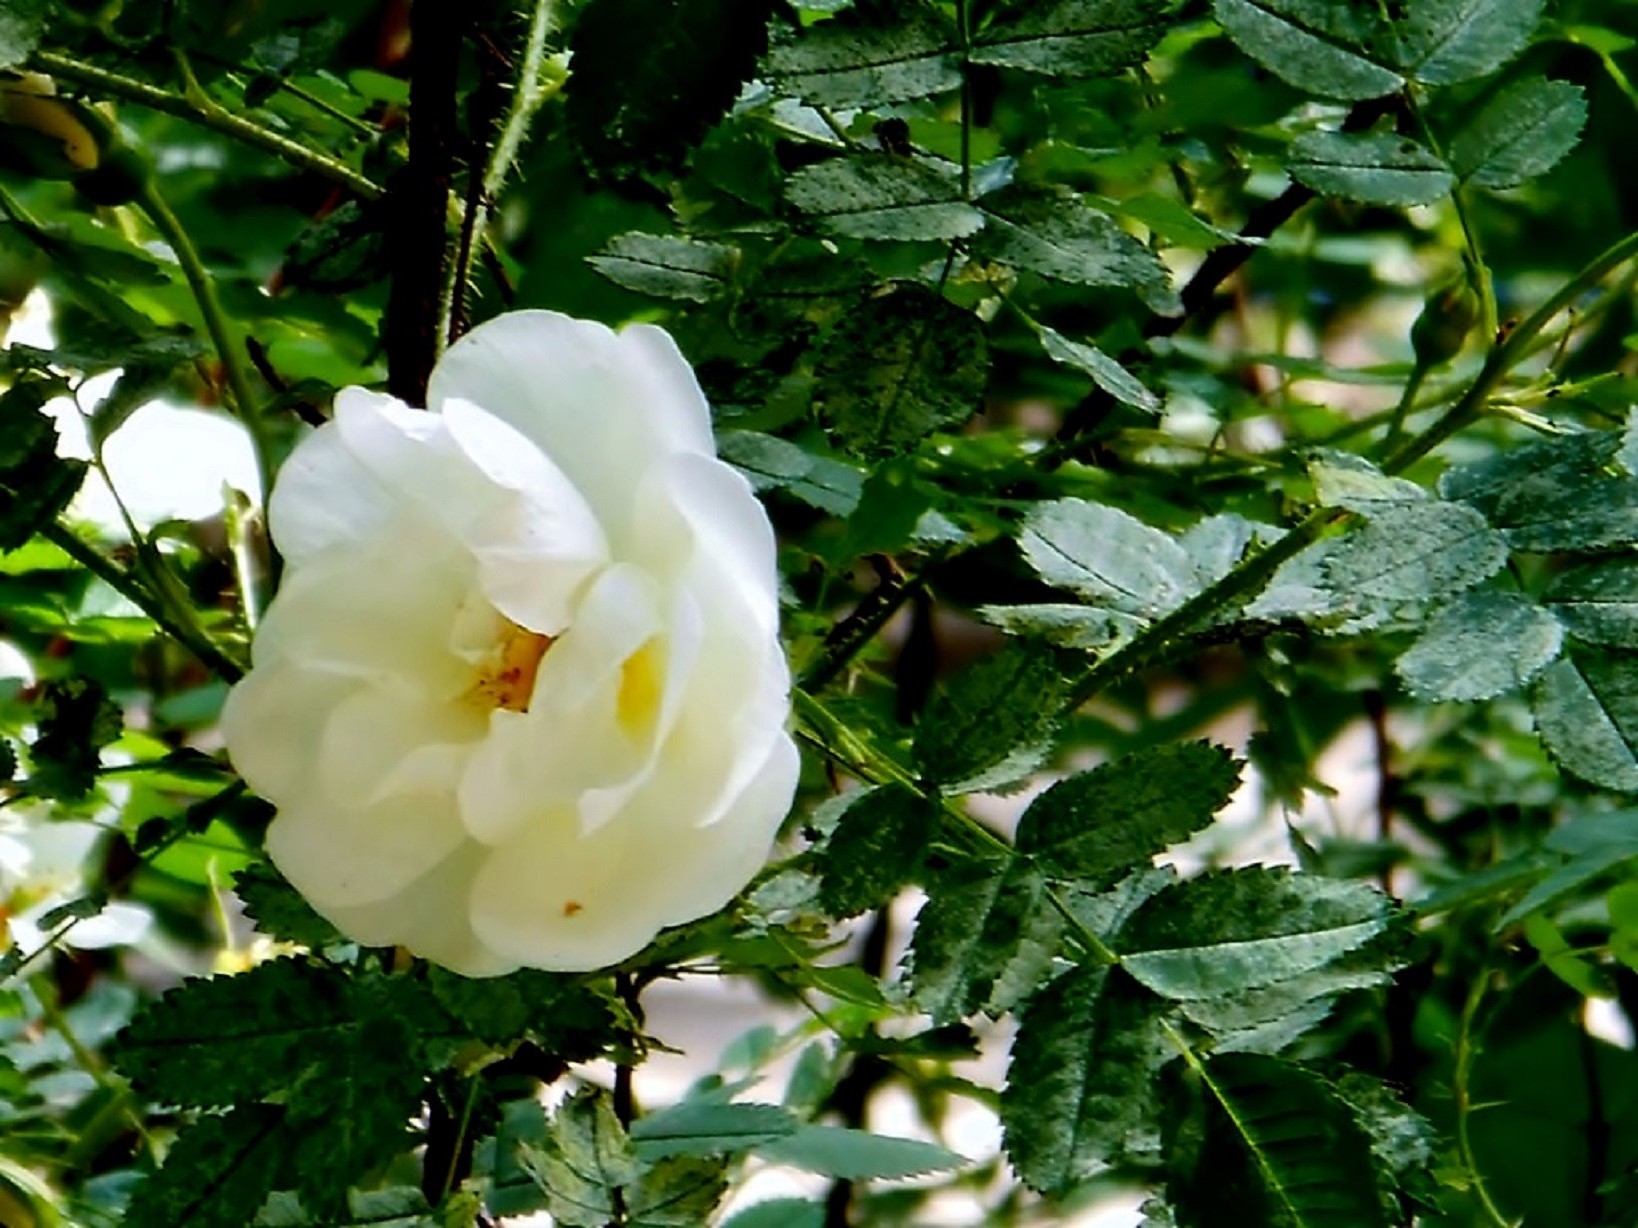 цветы цветок лист флора природа сад рост лето цветочные блюминг цвет кустарник на открытом воздухе яркий дерево крупным планом лепесток ботанический роза среды